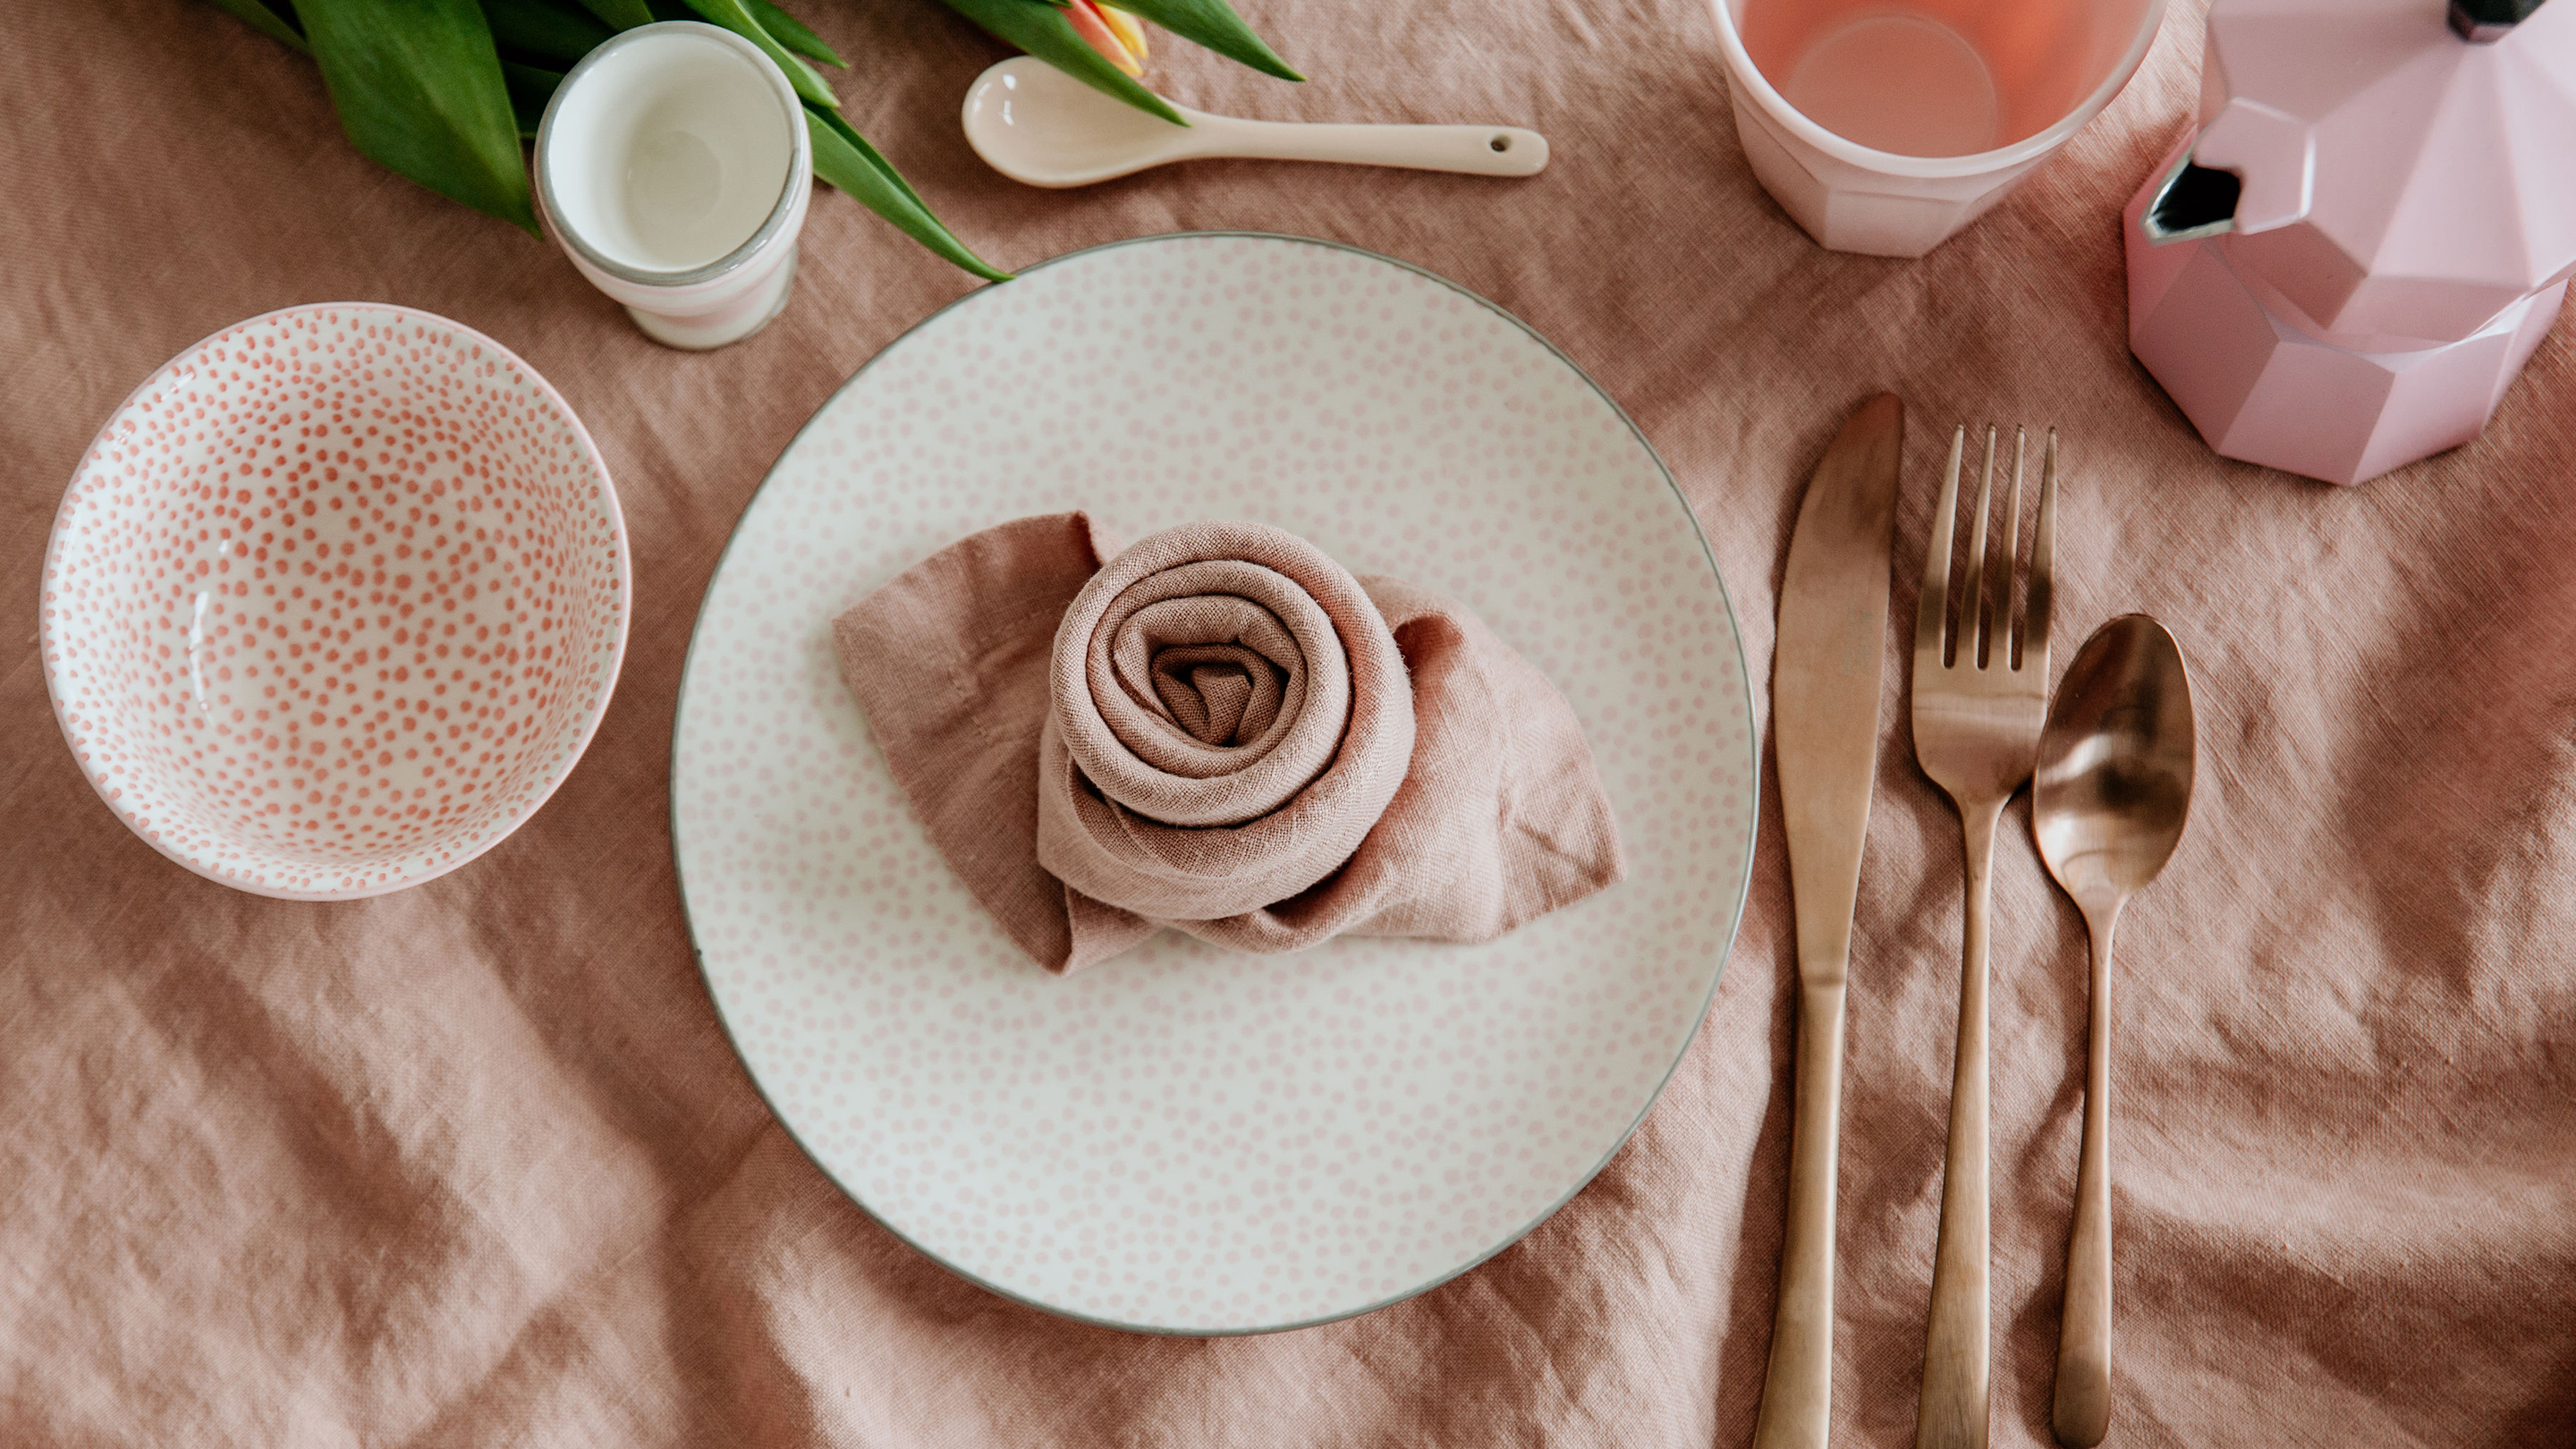 Serviette zur Rose falten (Marke des Geschirrs und der Tischwäsche im Hintergrund: Butlers).